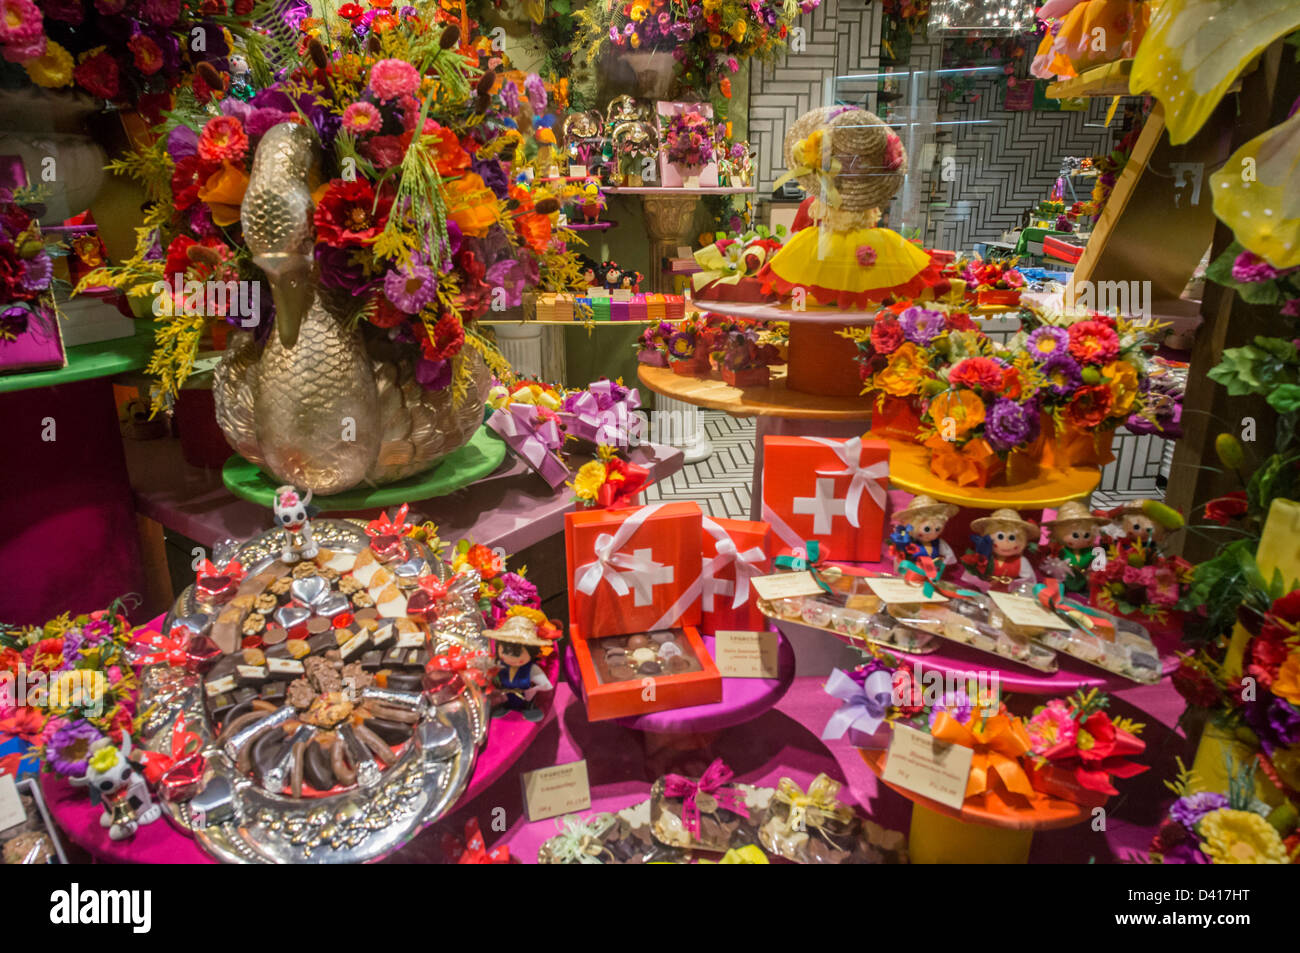 Teuscher Chocolate Shop , Old city Center, Zurich, Switzerland Stock Photo